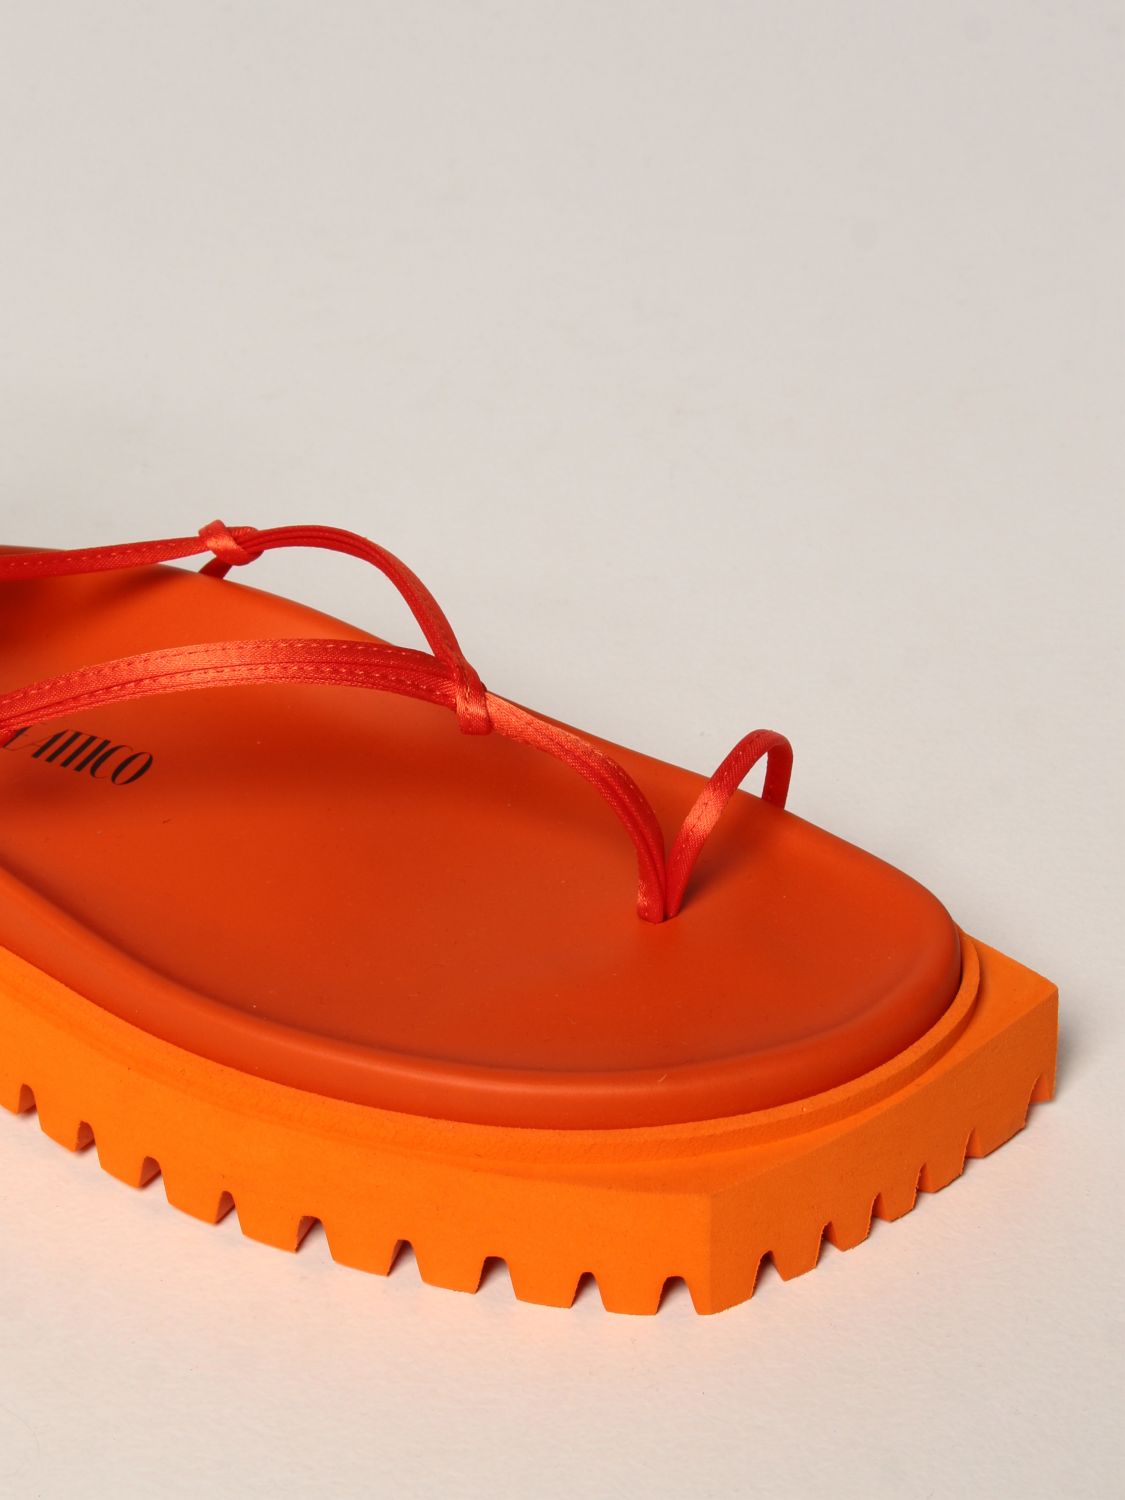 Sandalias planas The Attico: Zapatos mujer The Attico naranja 4